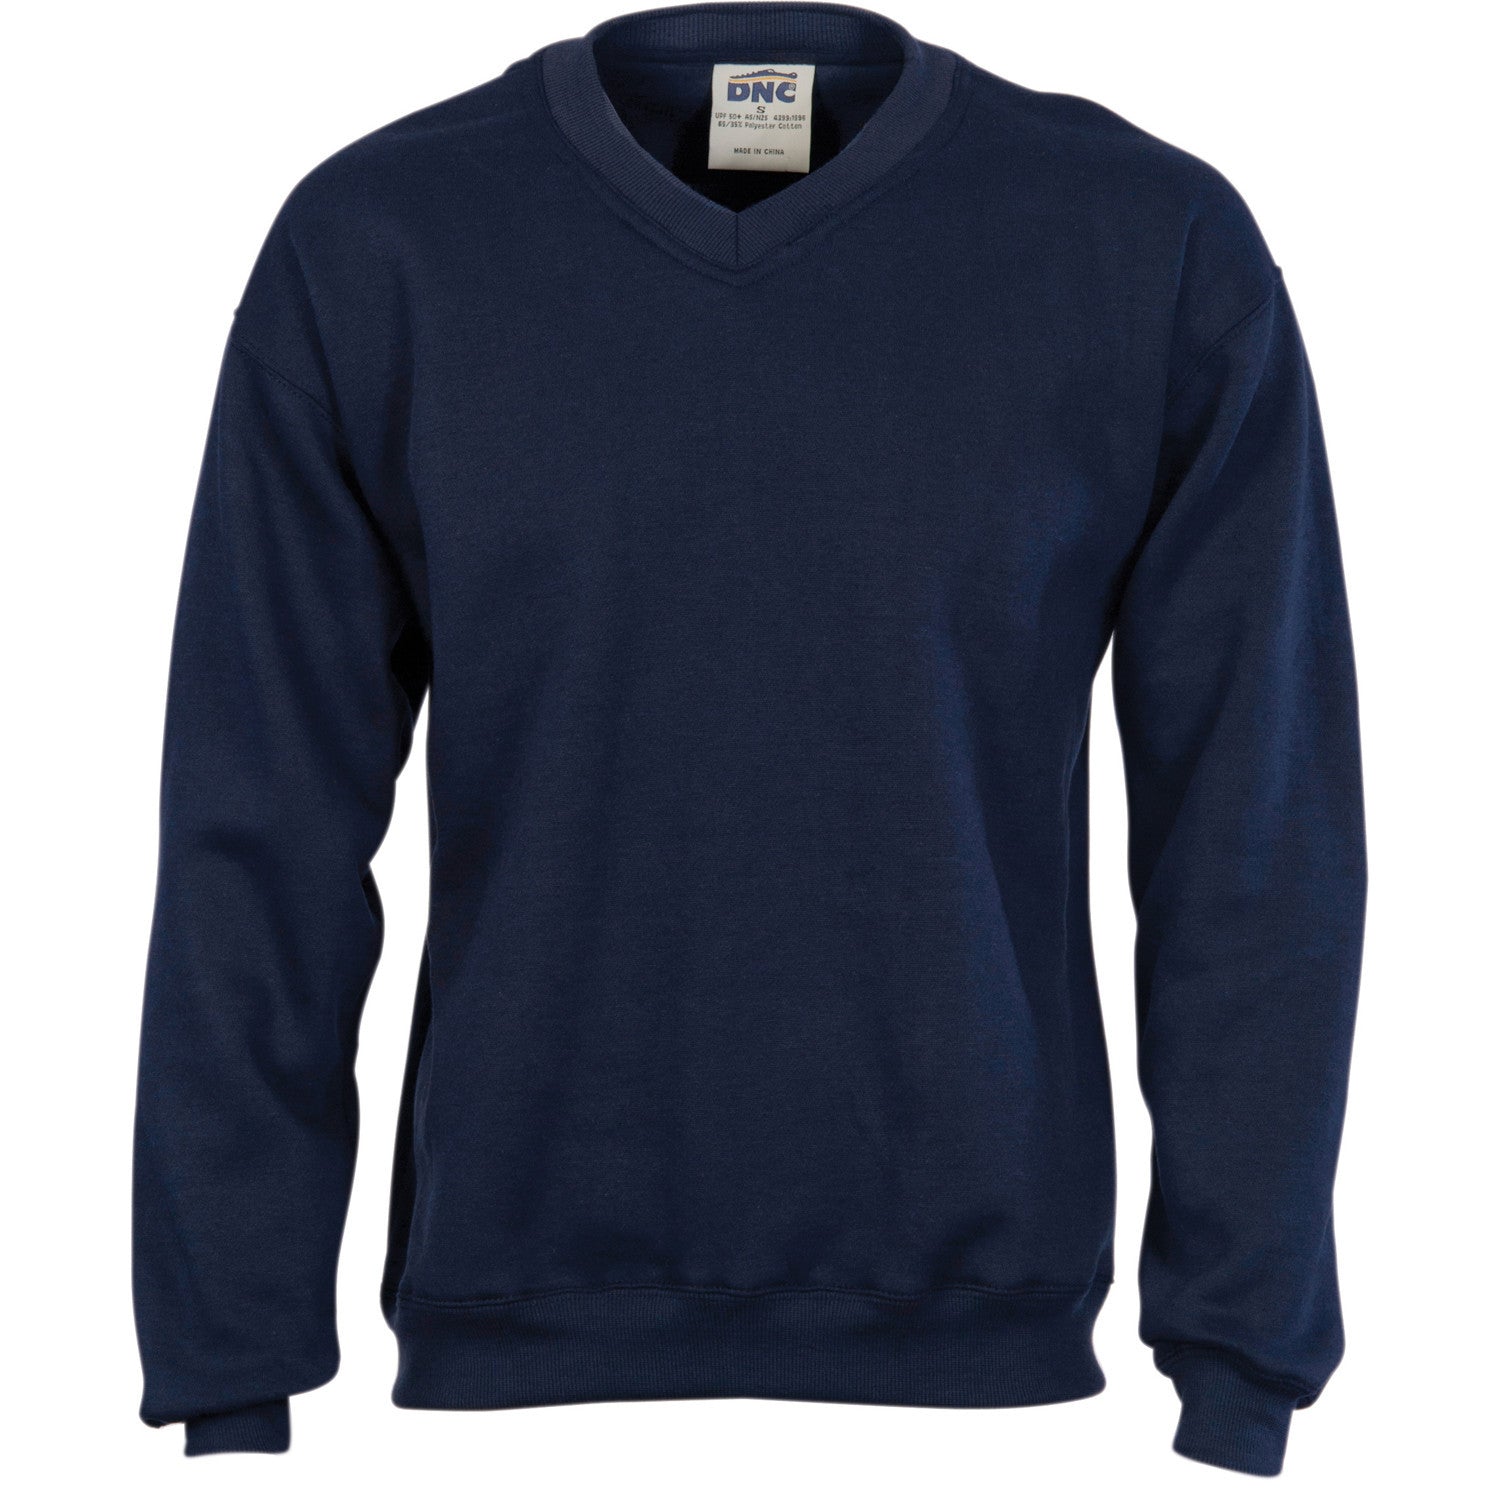 DNC V Neck Fleecy Sweatshirt (Sloppy Joe) (5301)